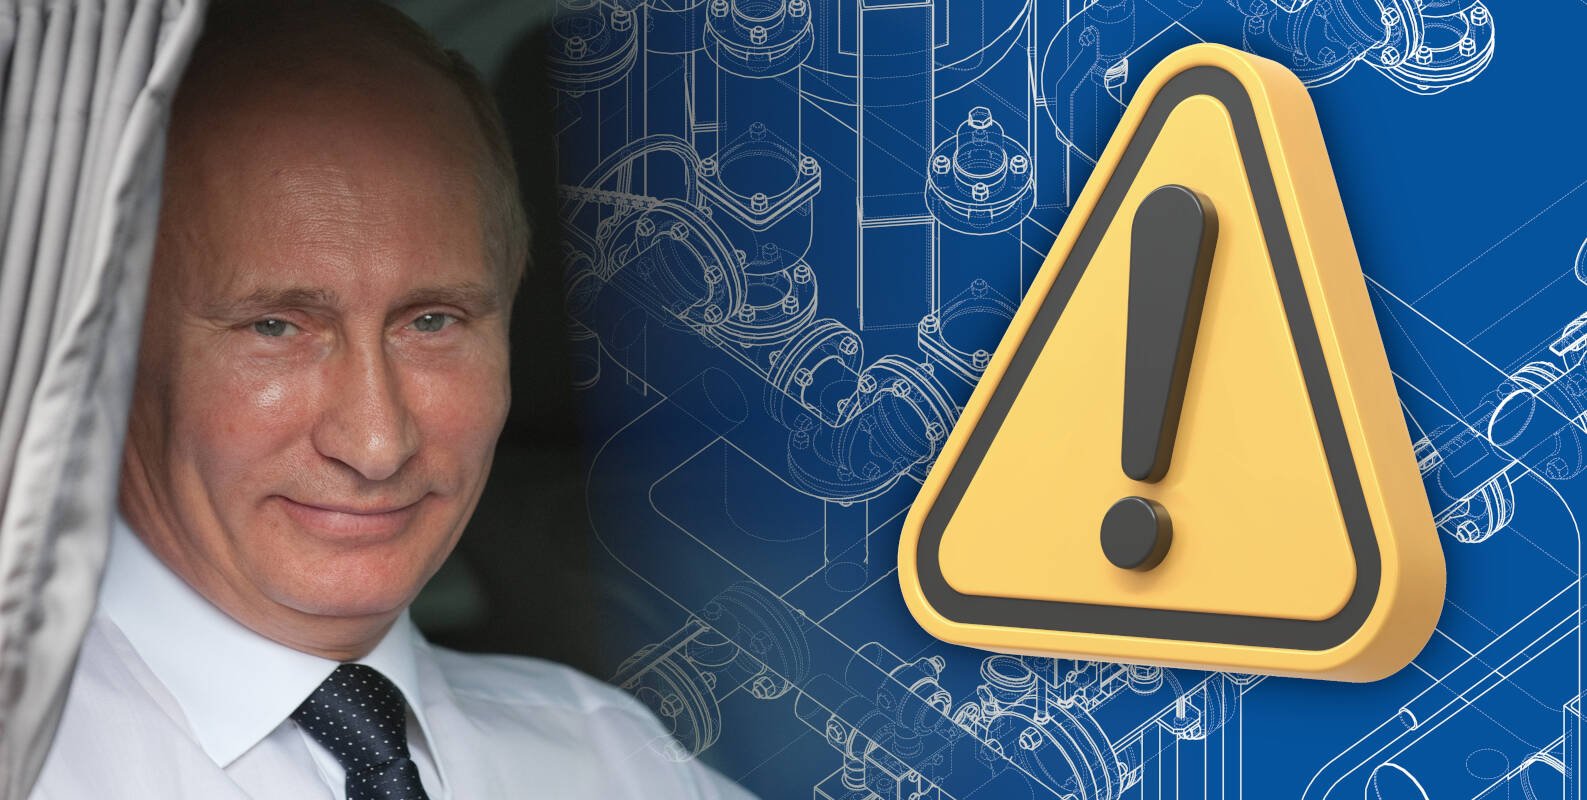 Kremlin's Sandworm blamed for cyberattacks on US, European water utilities